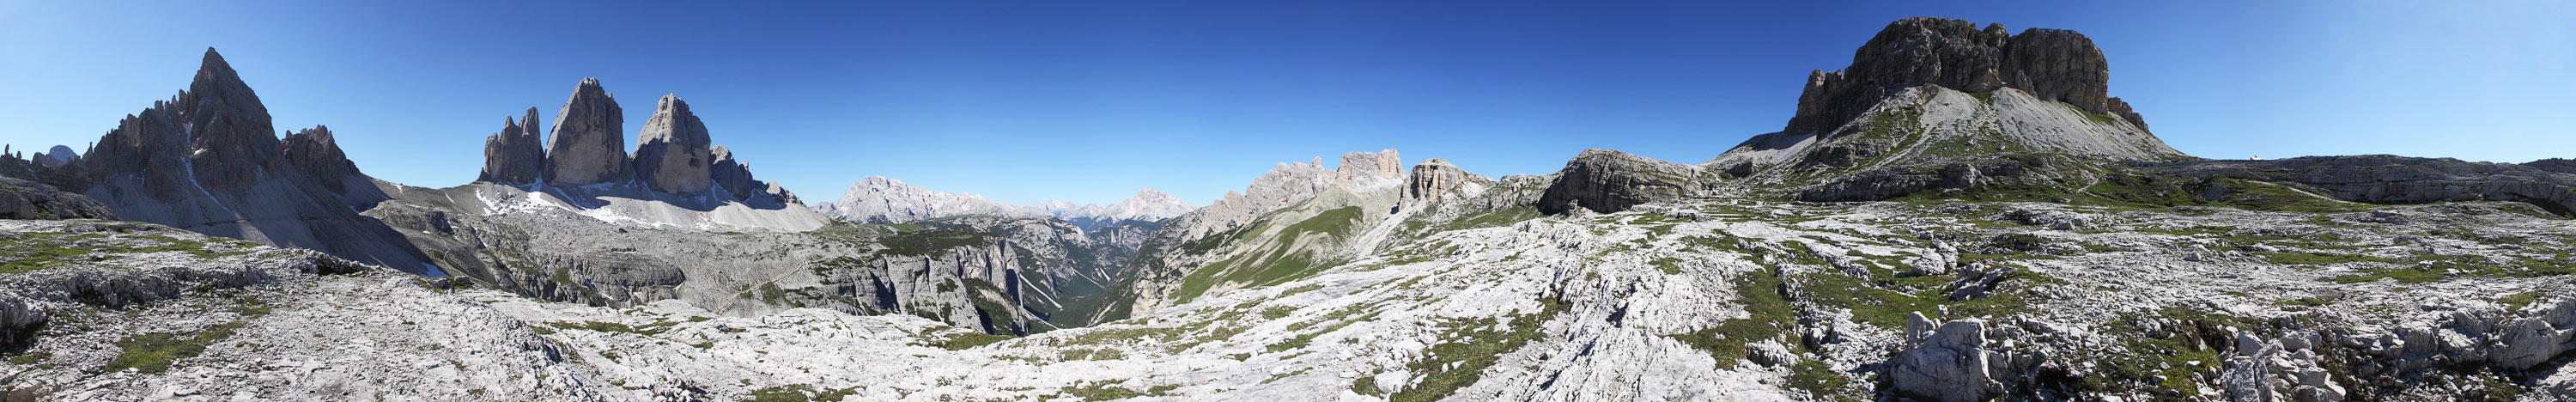 360 Grad Dolomiten mit den Drei Zinnen kann vollständig hier nur als WW-Pano gezeigt werden...